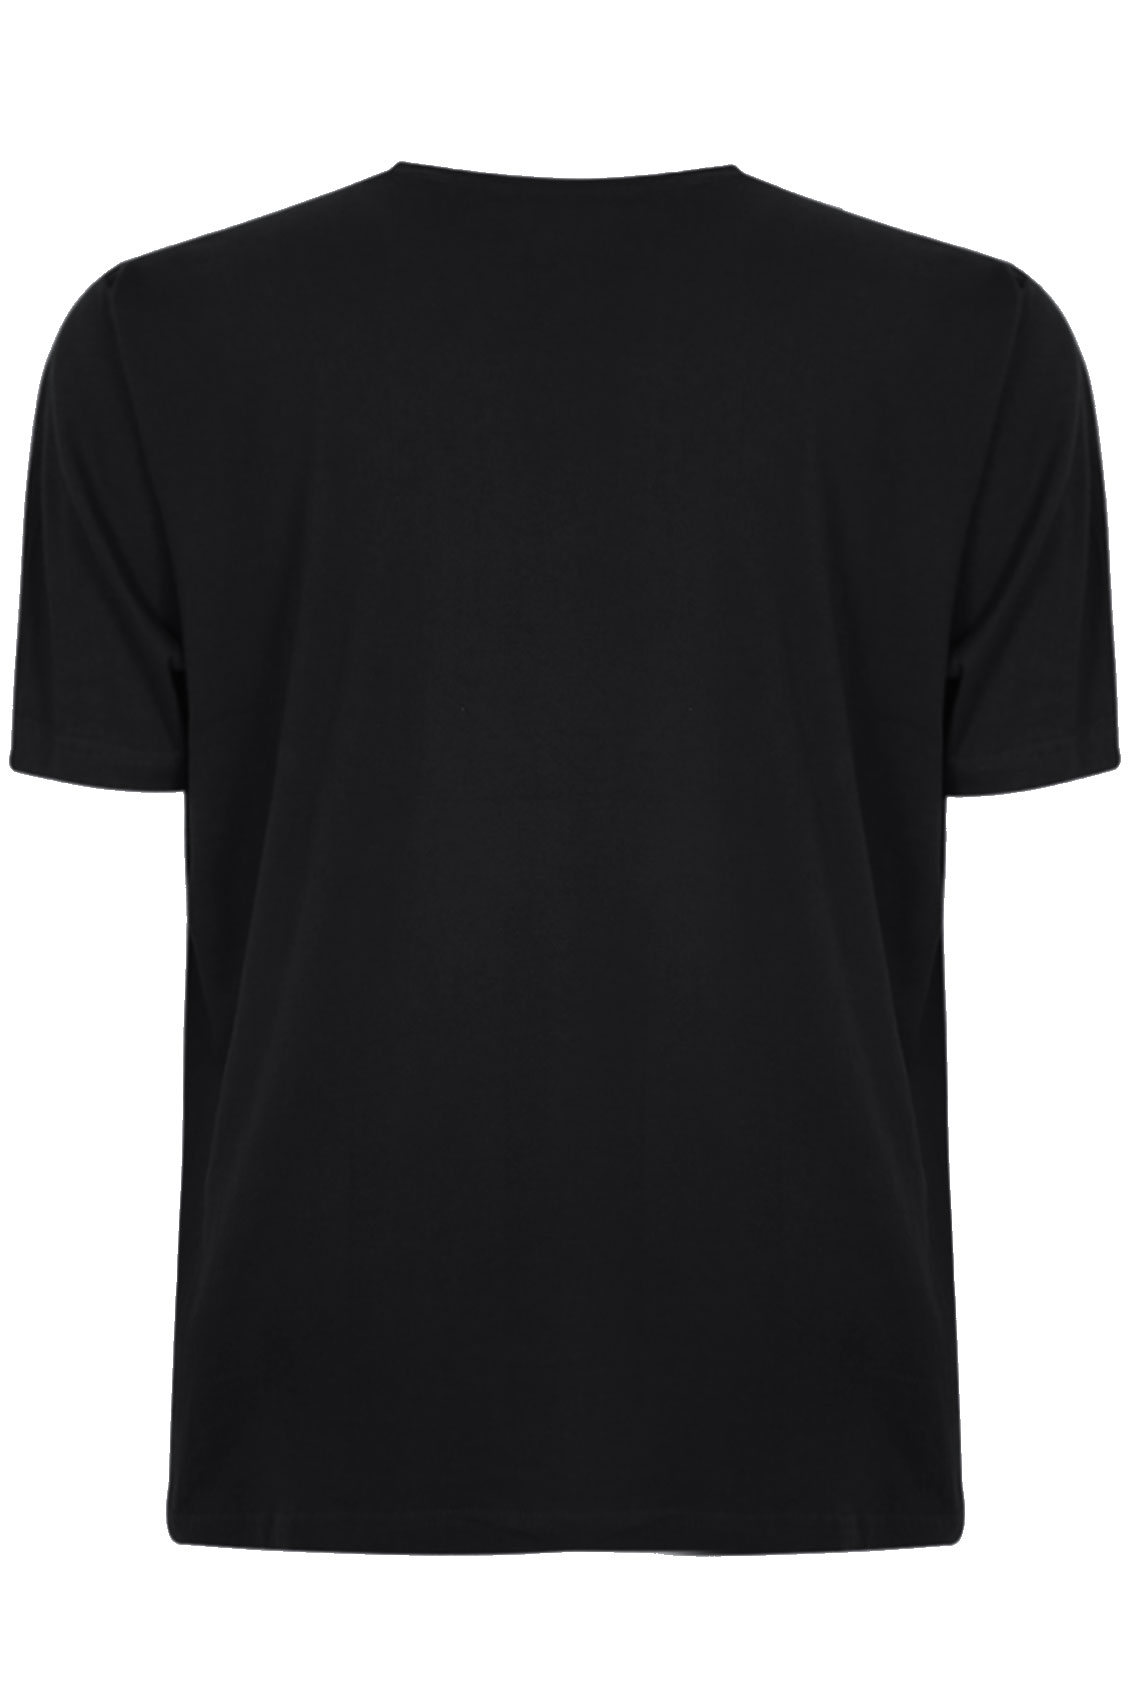 BadRhino Black Basic Plain Crew Neck T-Shirt Extra large sizes M,L,XL ...